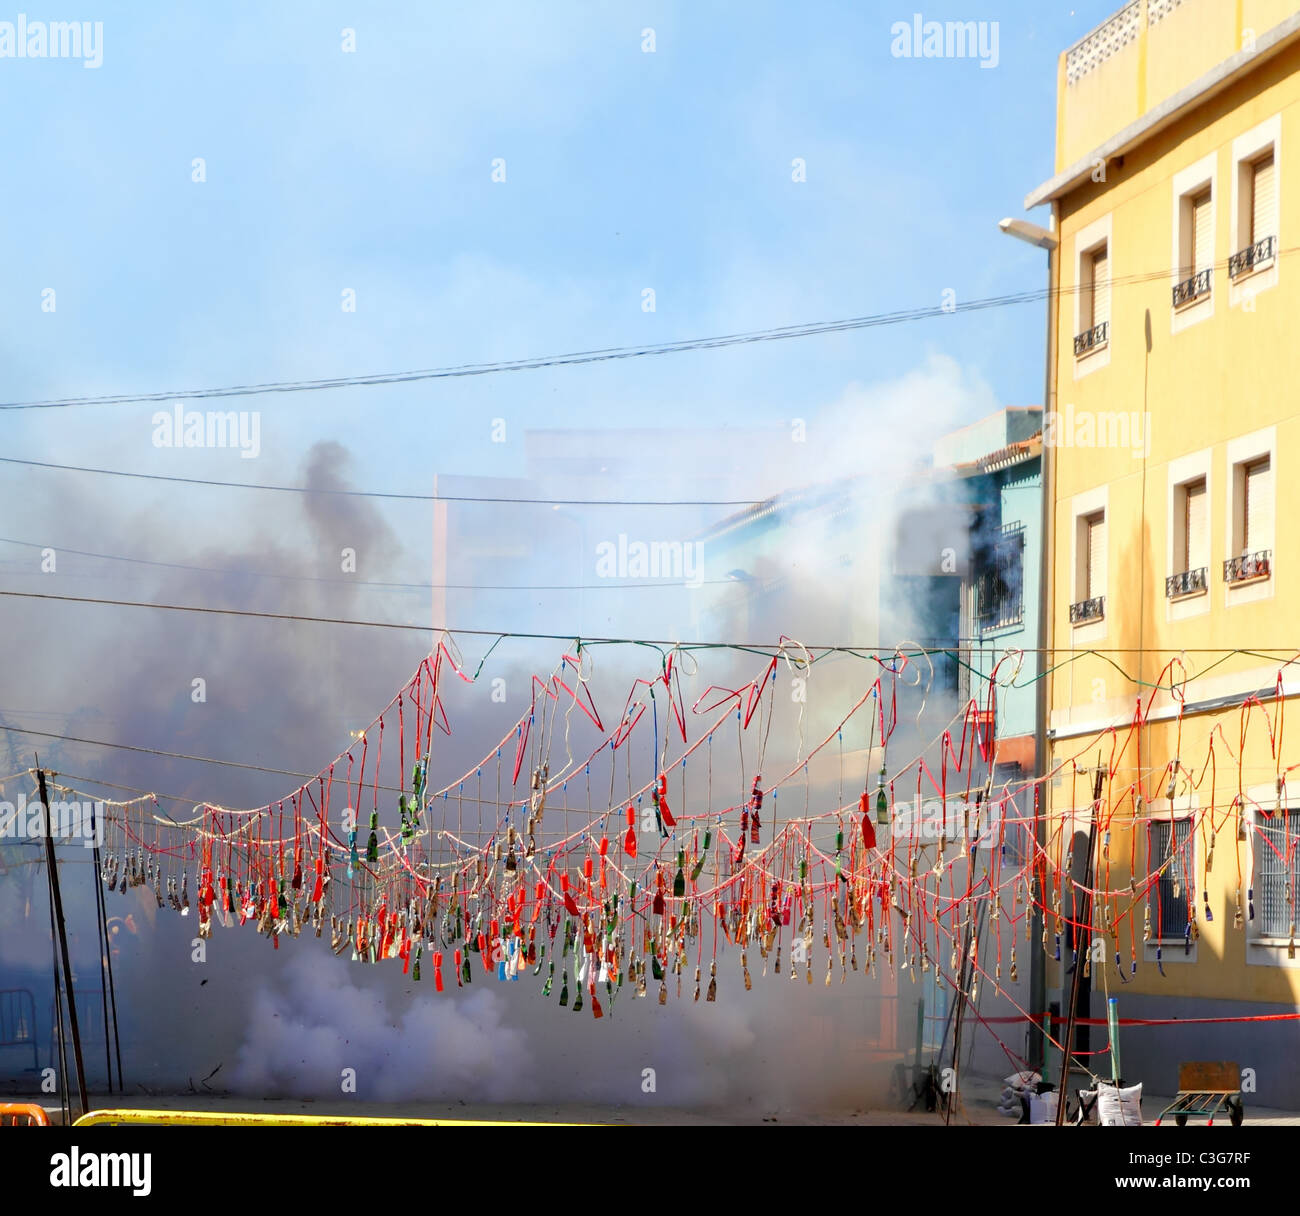 Feuerwerk Feuerwerkskörper explodiert in Rauch Straße in Spanien fest Stockfoto